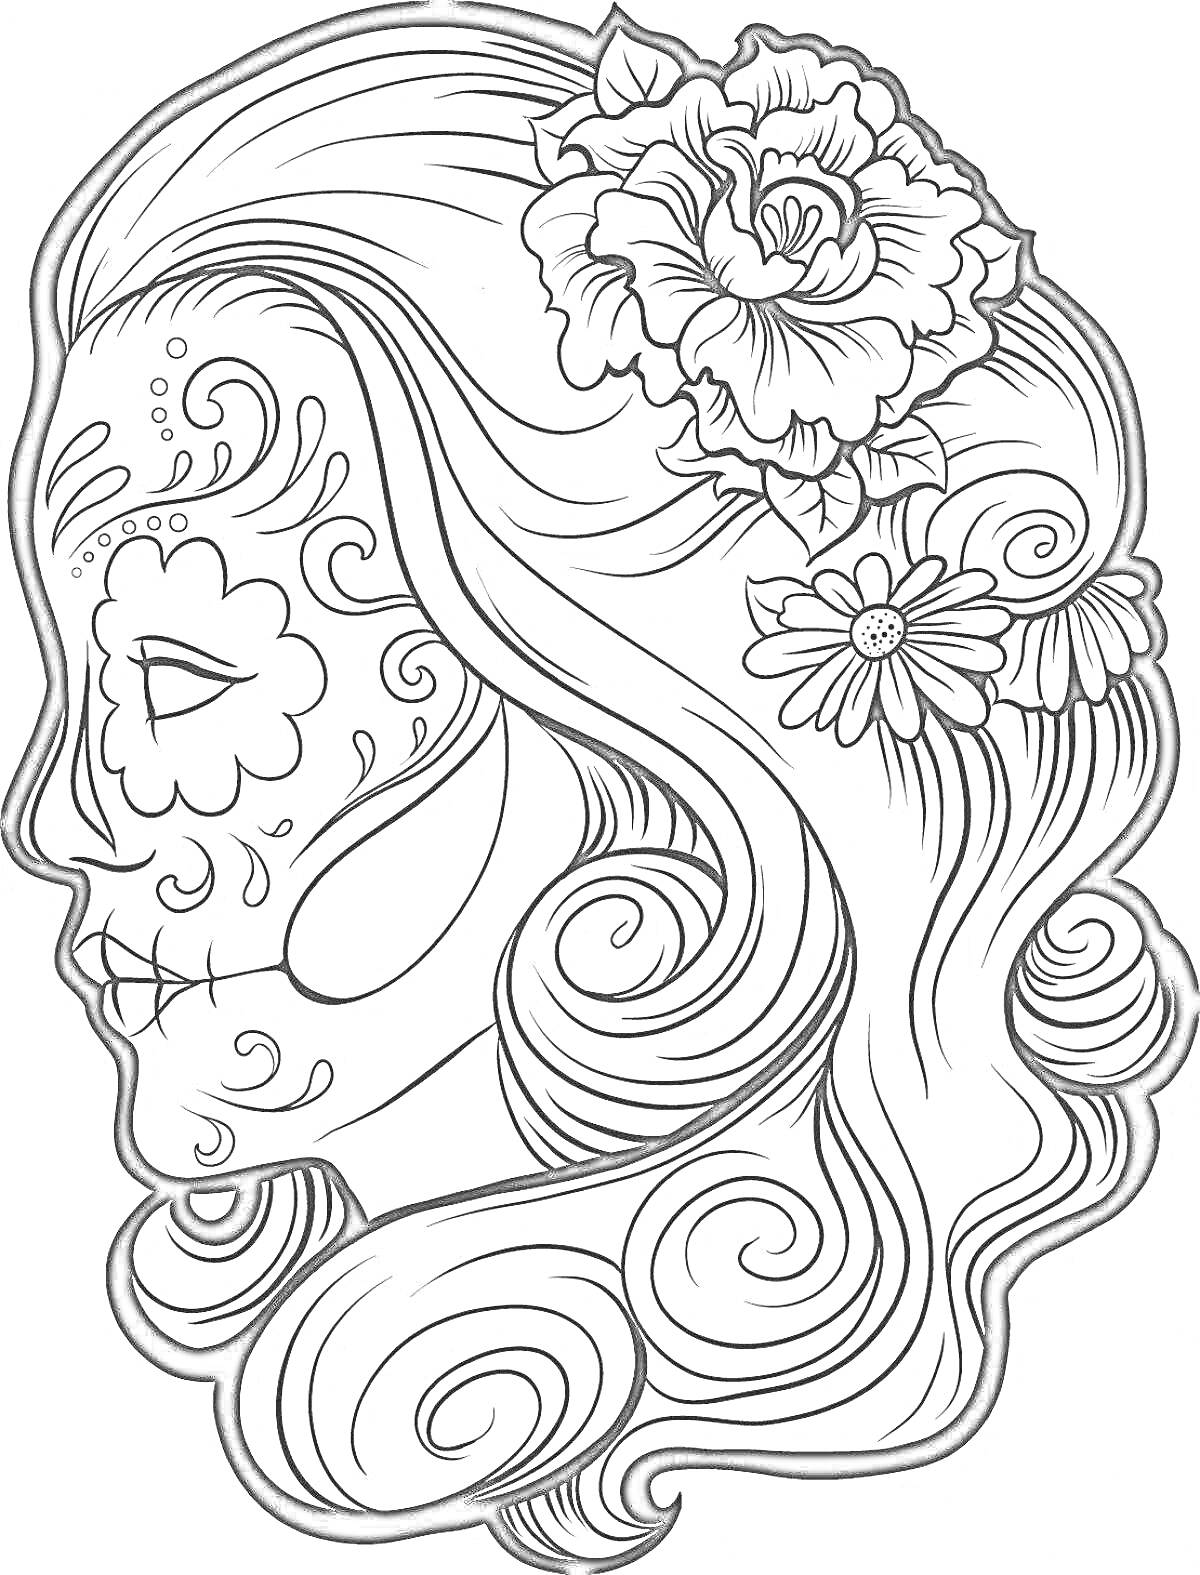 Раскраска Профиль девушки с цветами в волосах и узорами на лице